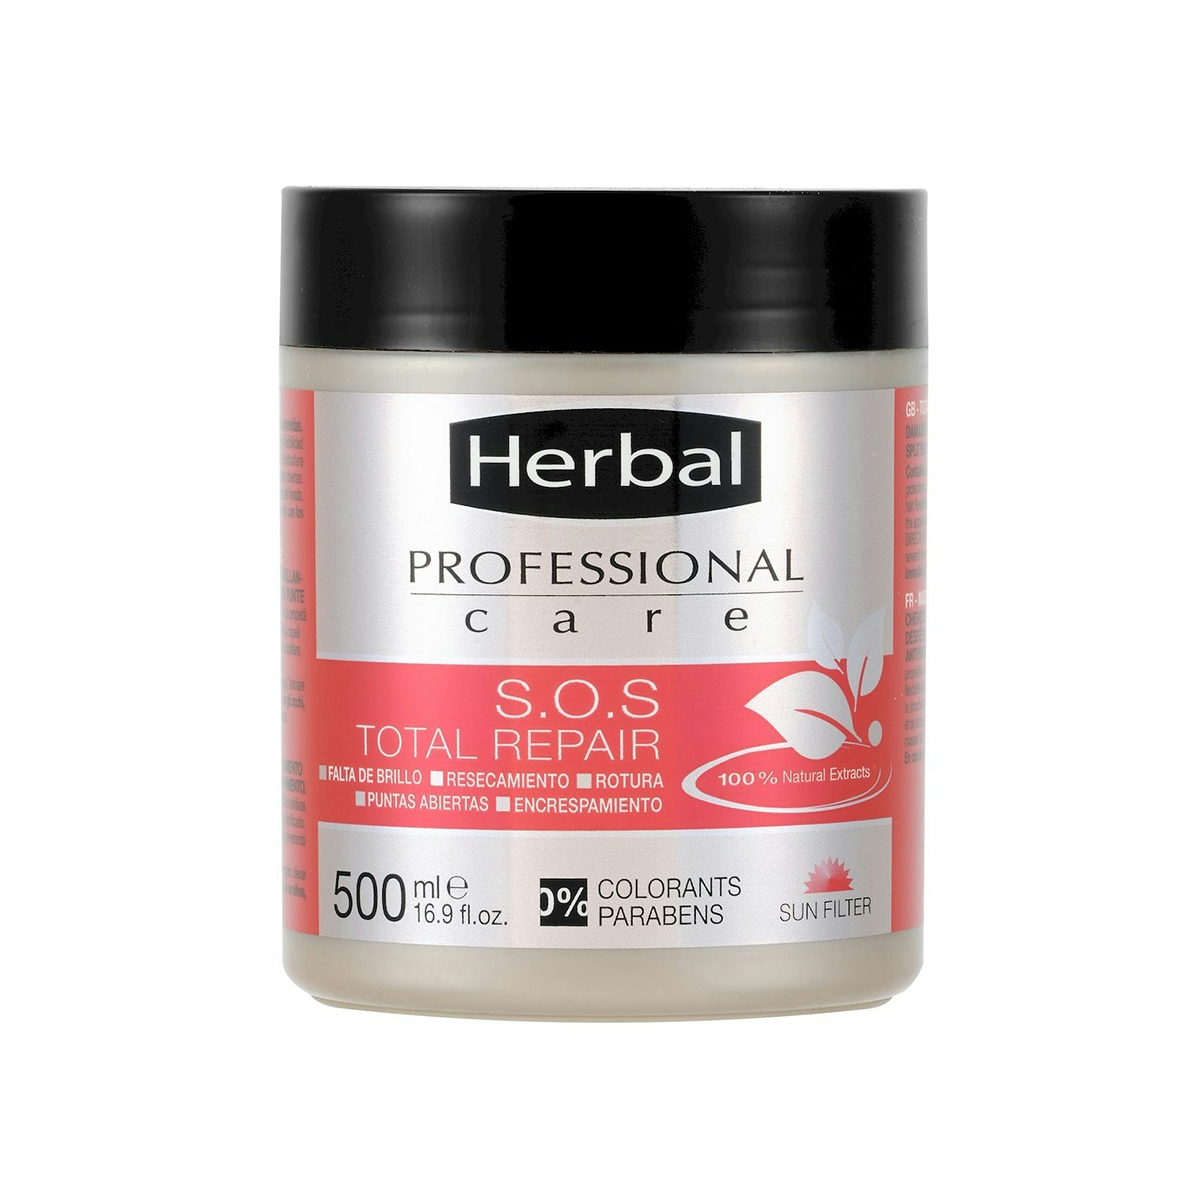 Mascarilla total repair HERBAL Professional care sos tarro 500 ml